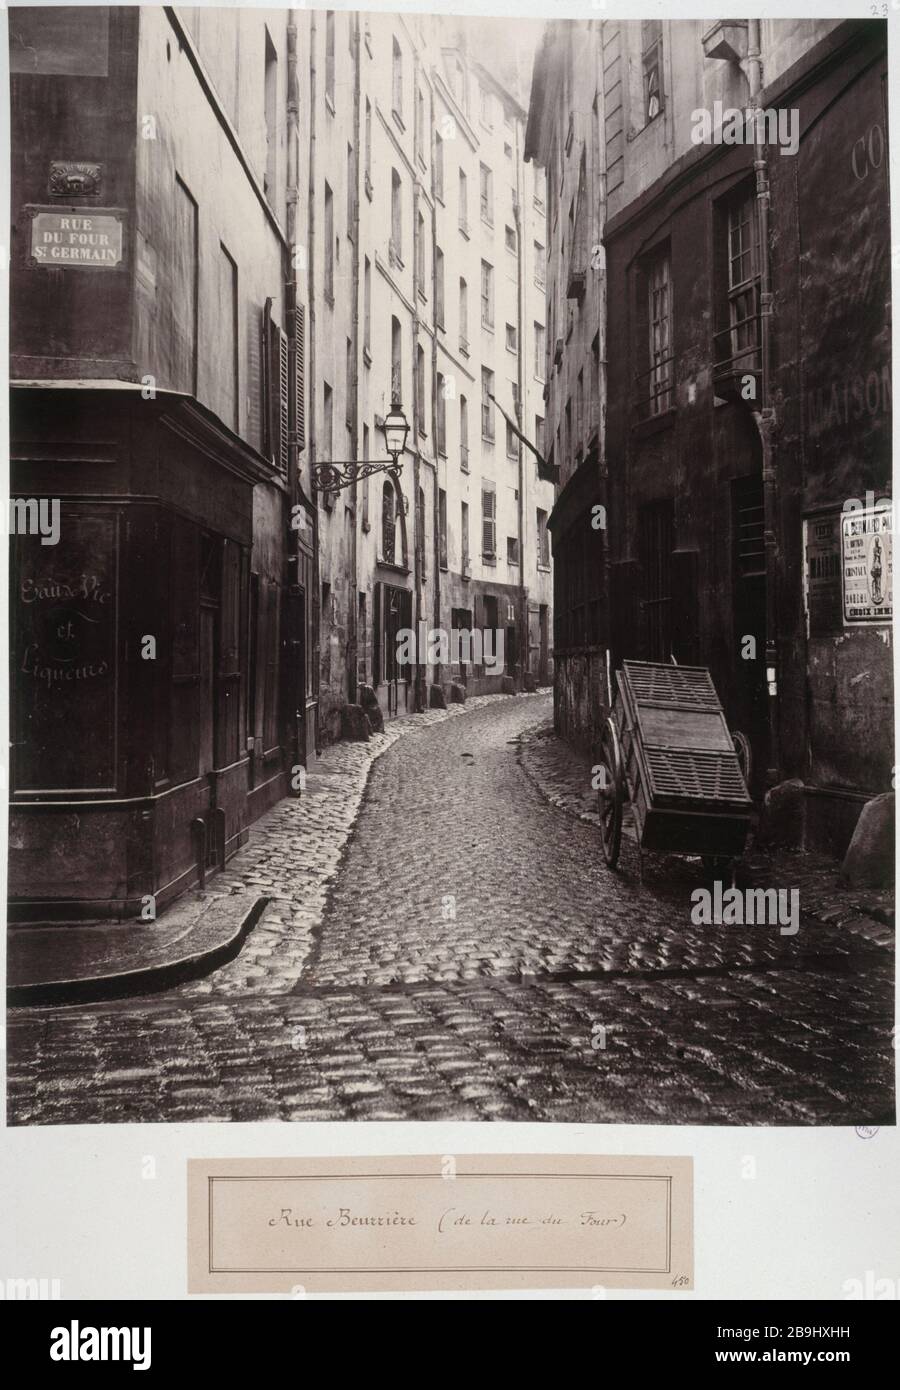 Beurrière STREET (FORNO DI STRADA) 'Rue Beurrière (de la rue du Four)', VIème arr.. Photographie de Charles Marville (1813-1879). Parigi, musée Carnavalet. Foto Stock